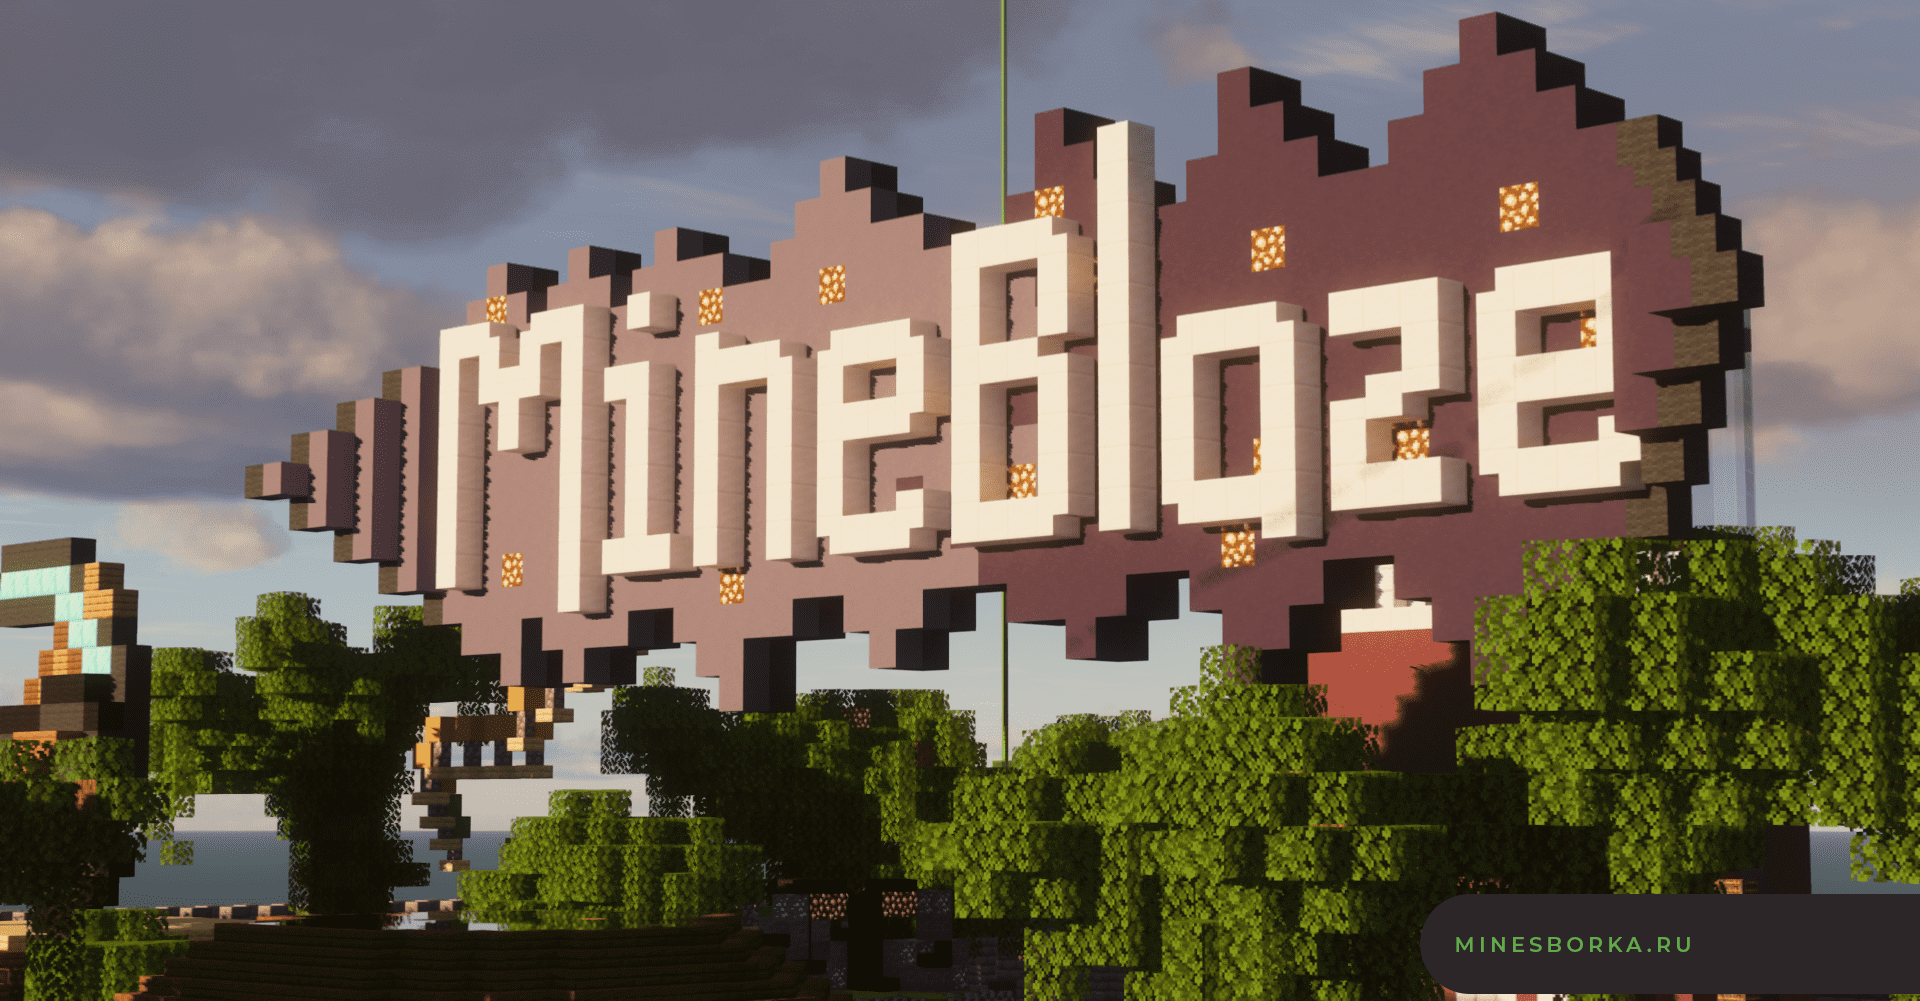 Карта спавна MineBlaze | Красивый спавн для сервера Minecraft | 1.14.4